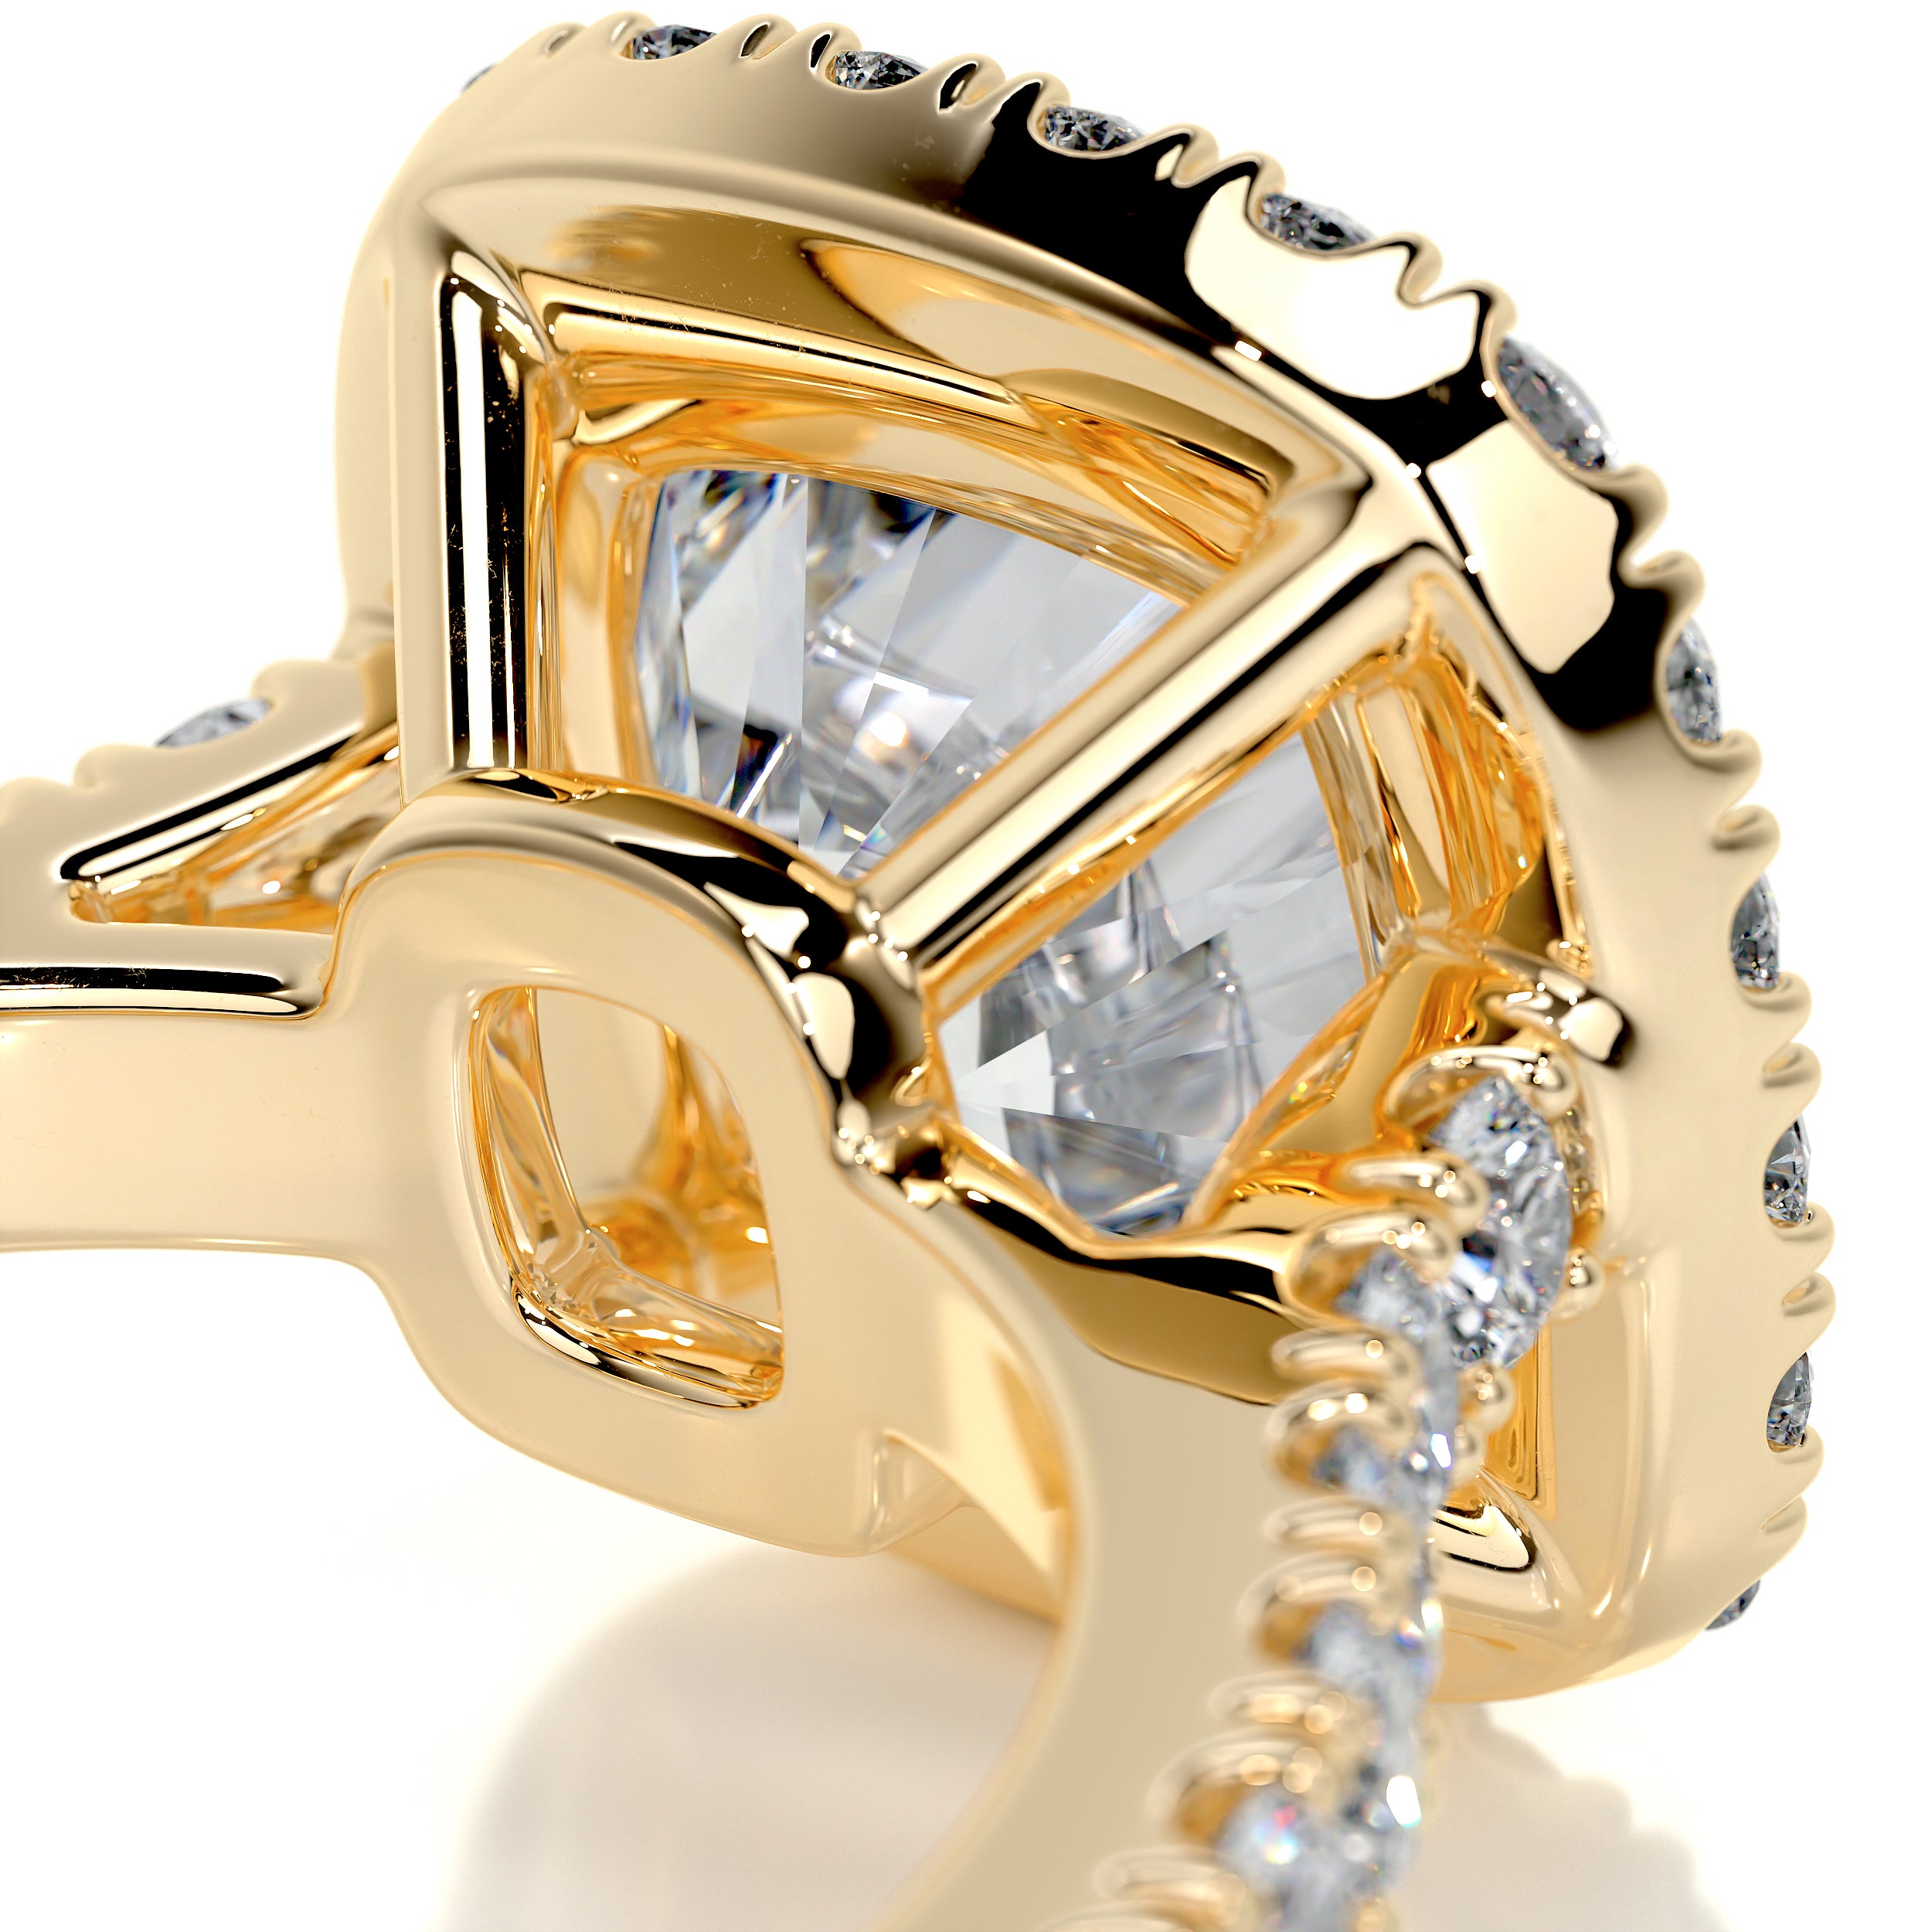 Celeste Moissanite & Diamonds Ring   (3 Carat) -18K Yellow Gold